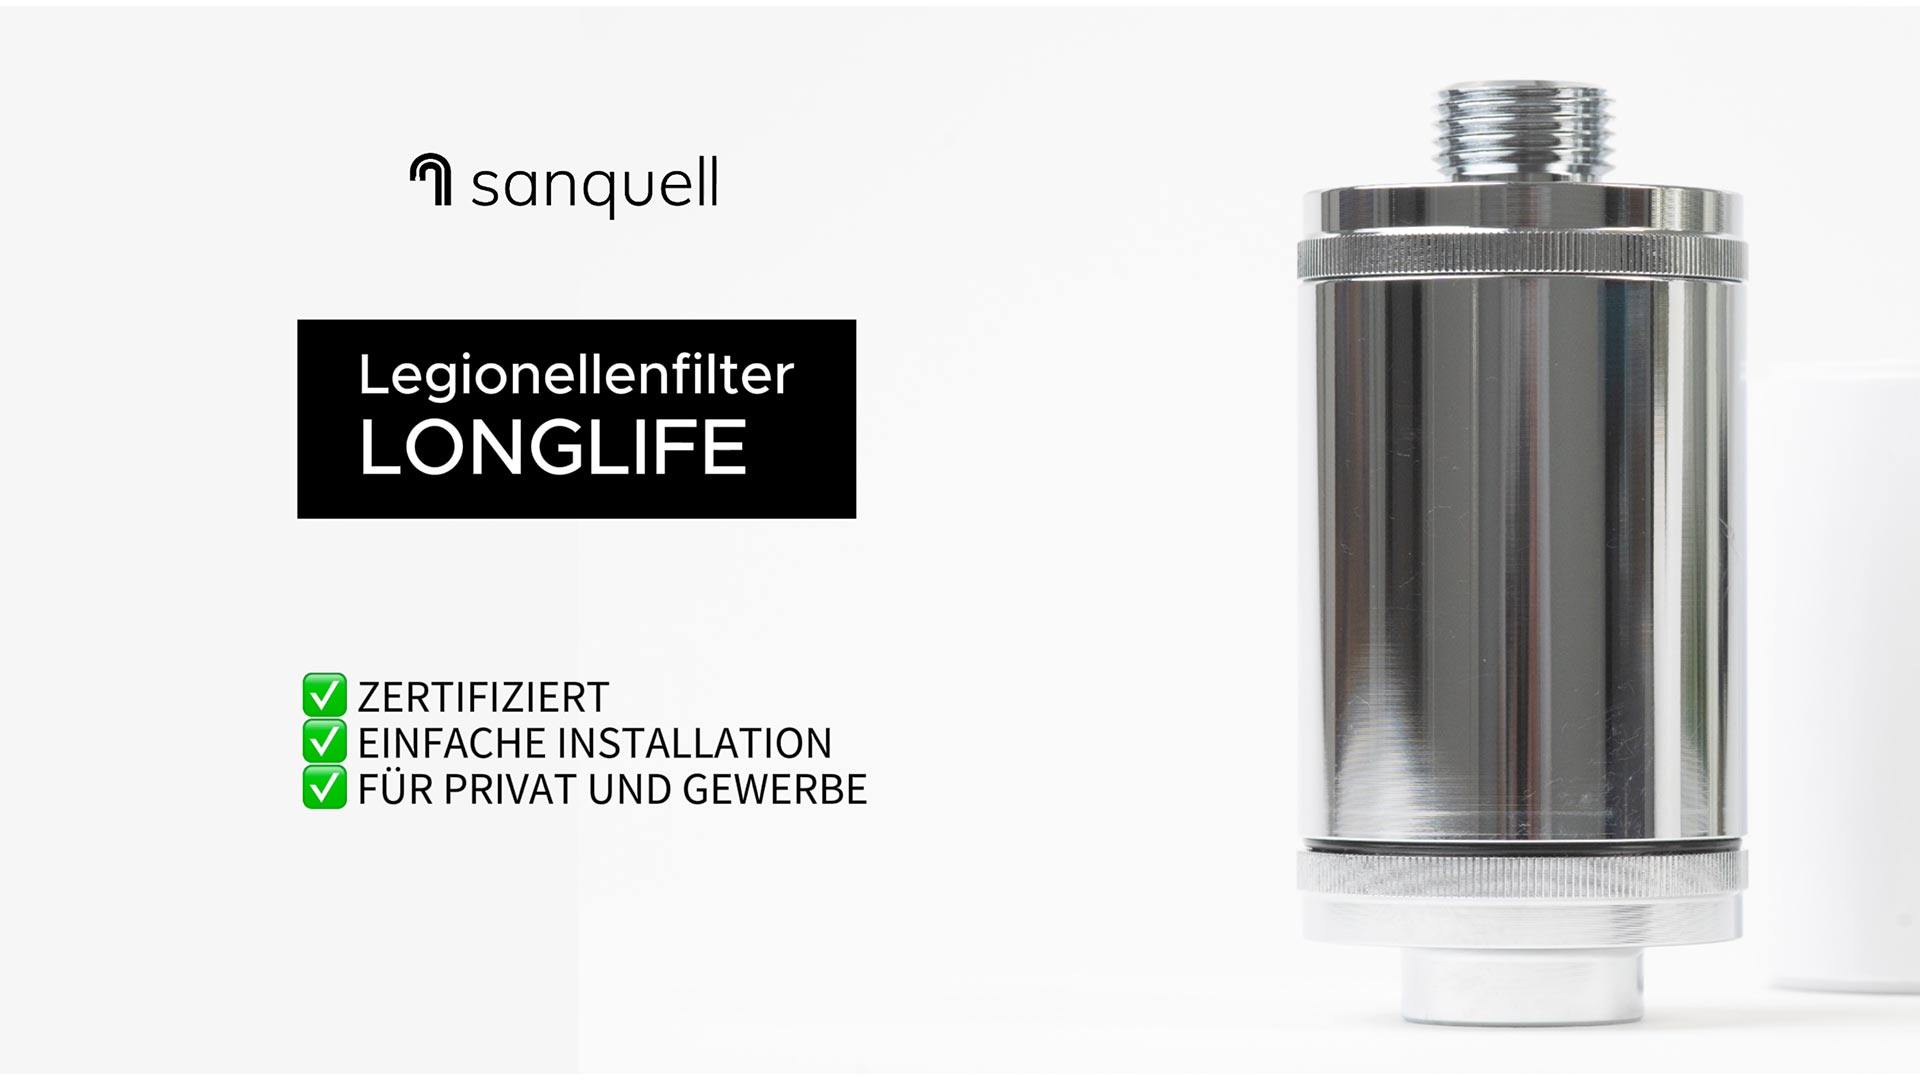 XFIL Legionellenfilter direkt vom Hersteller - SanitärJournal